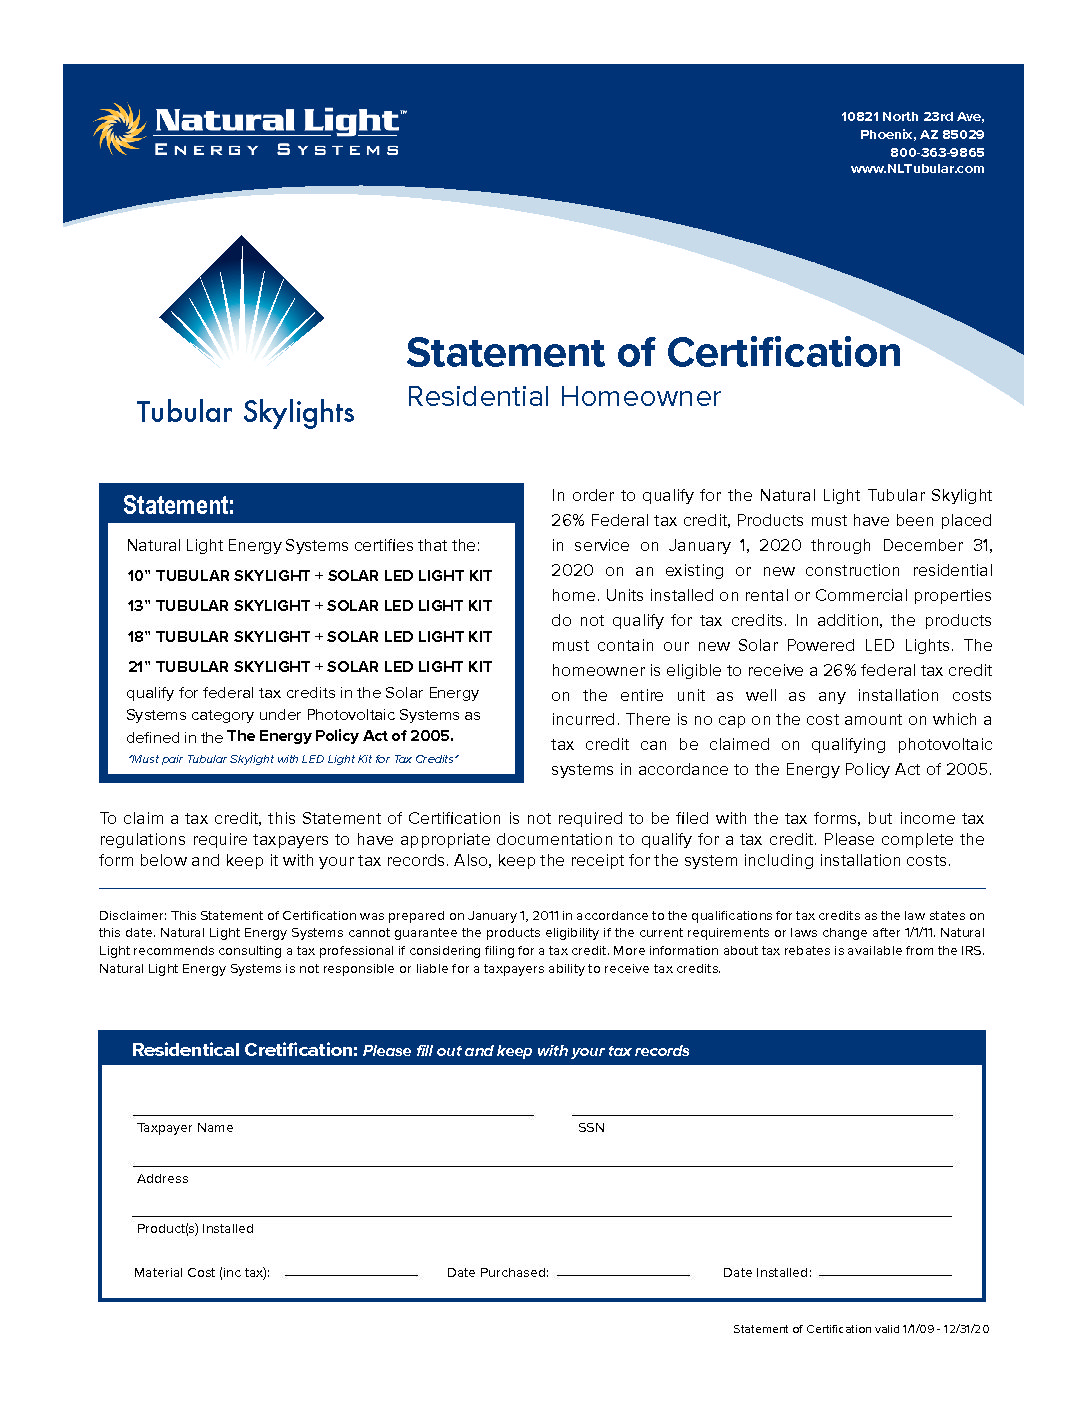 https://nltubular.com/wp-content/uploads/TUBELIGHT_Certifications_NLES2020-pdf.jpg